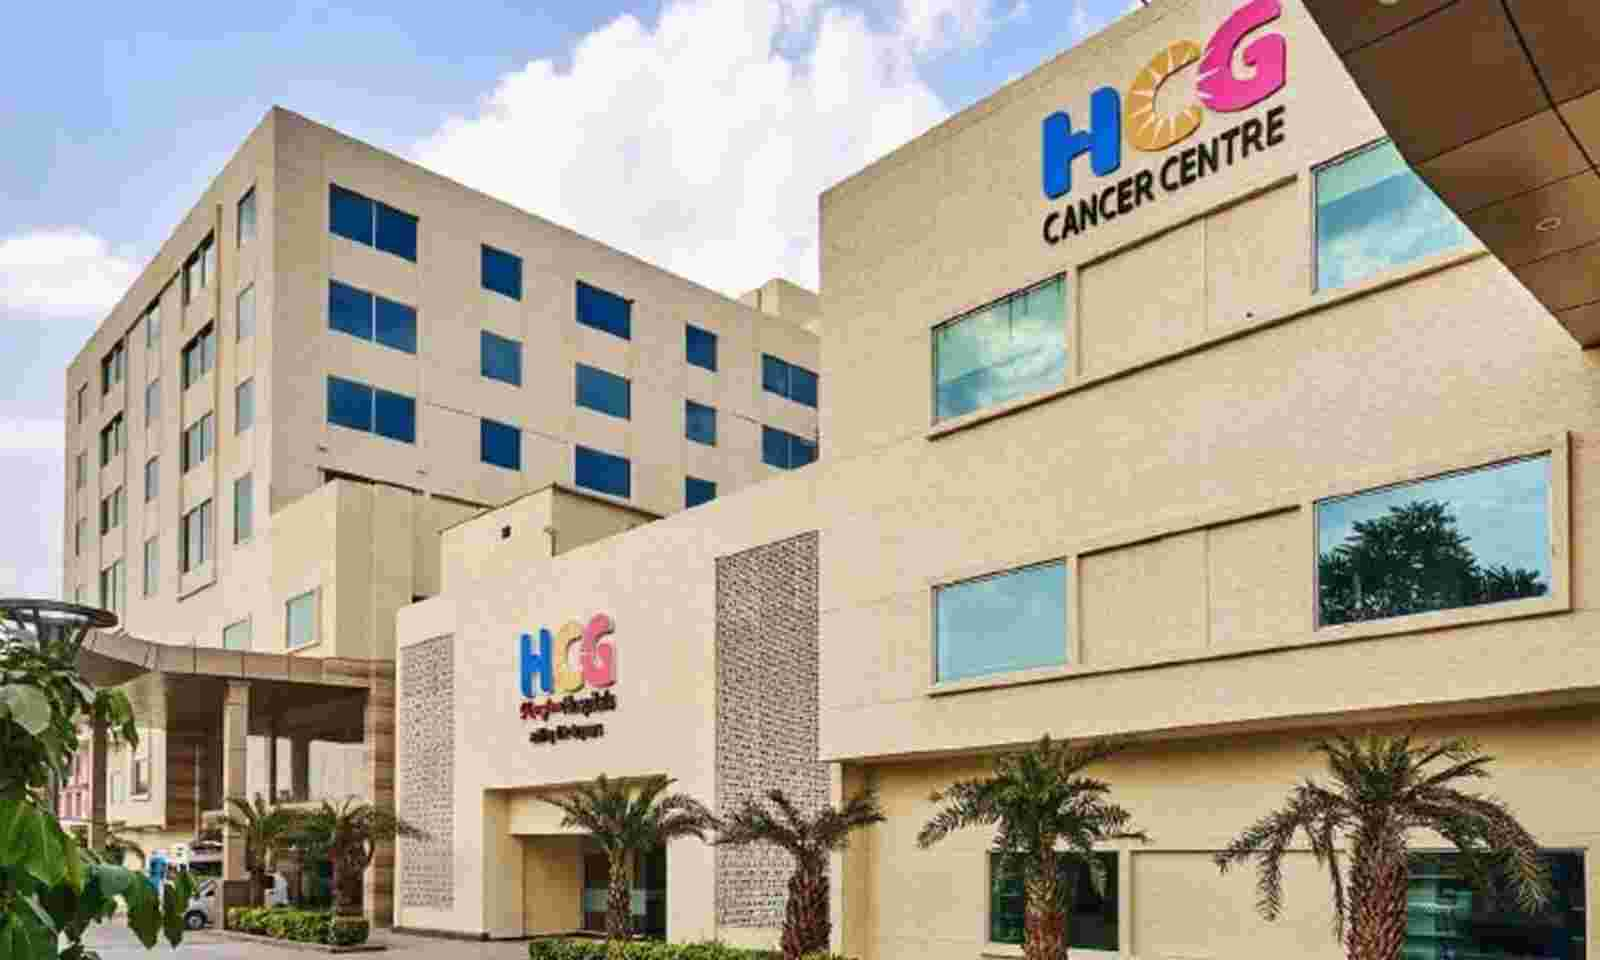 HCG Cancer Centre